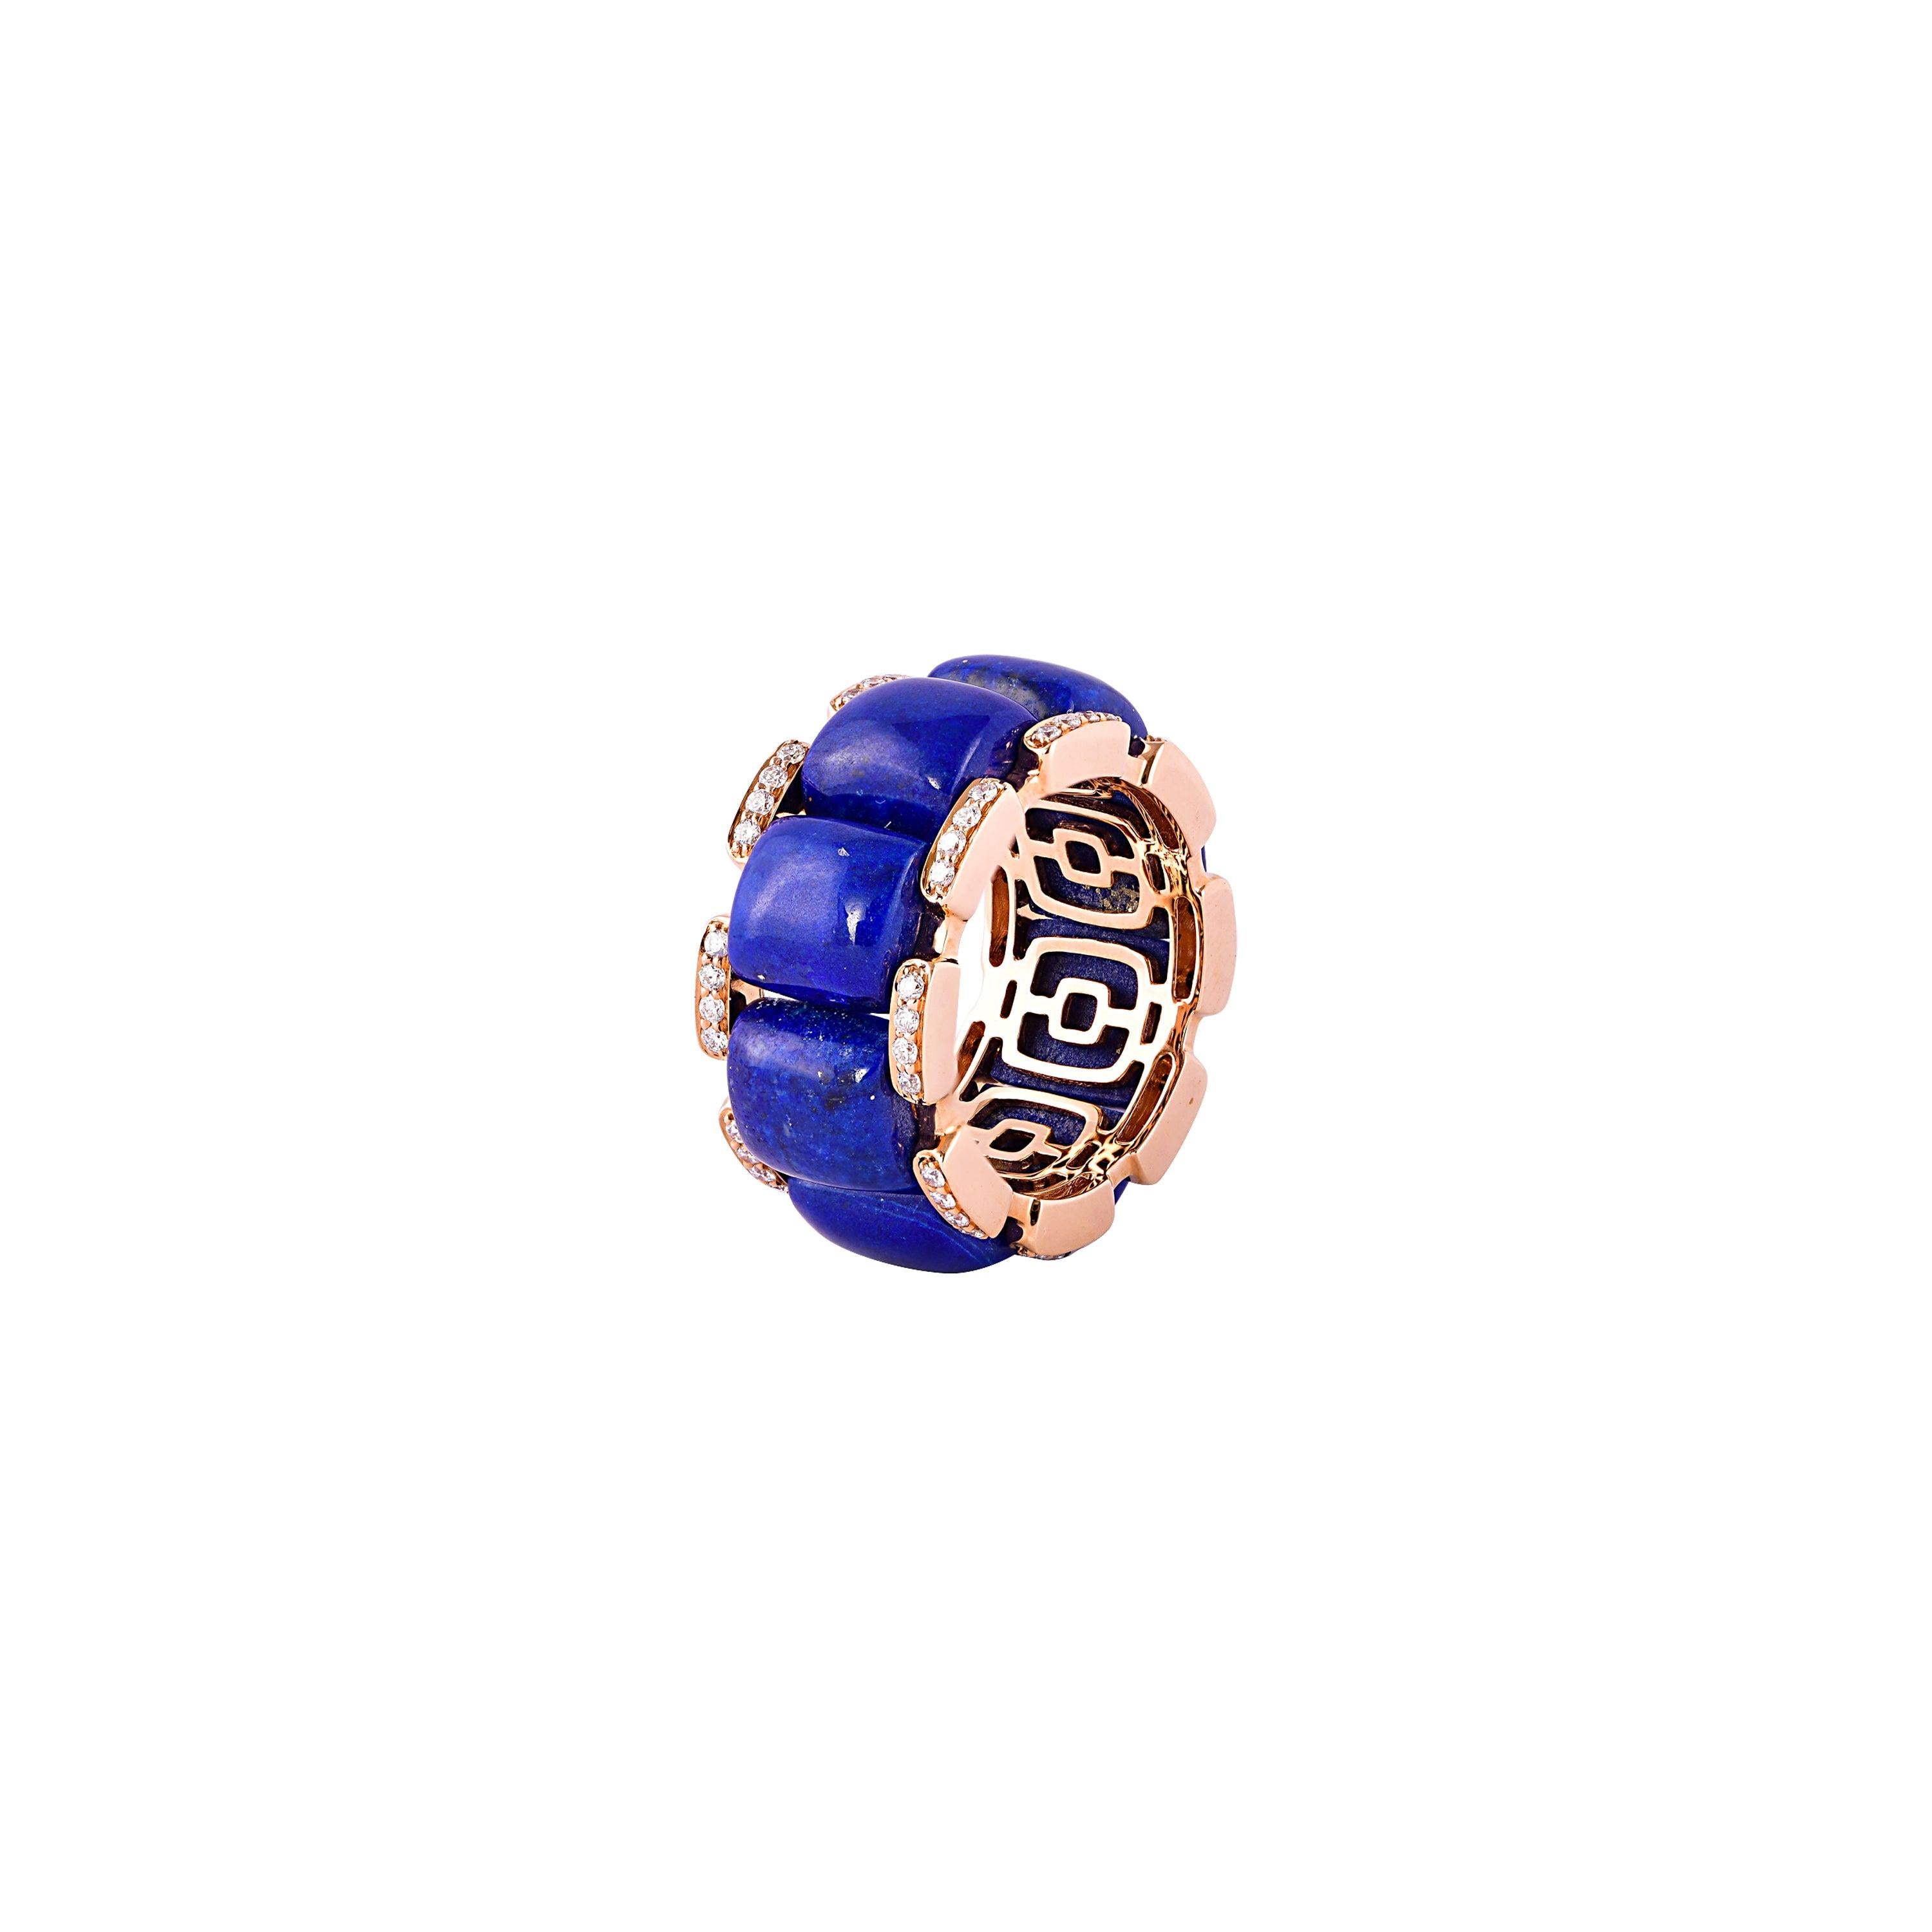 For Sale:  19.32 Carat Lapis Lazuli and White Diamond Ring in 18 Karat Rose Gold 2